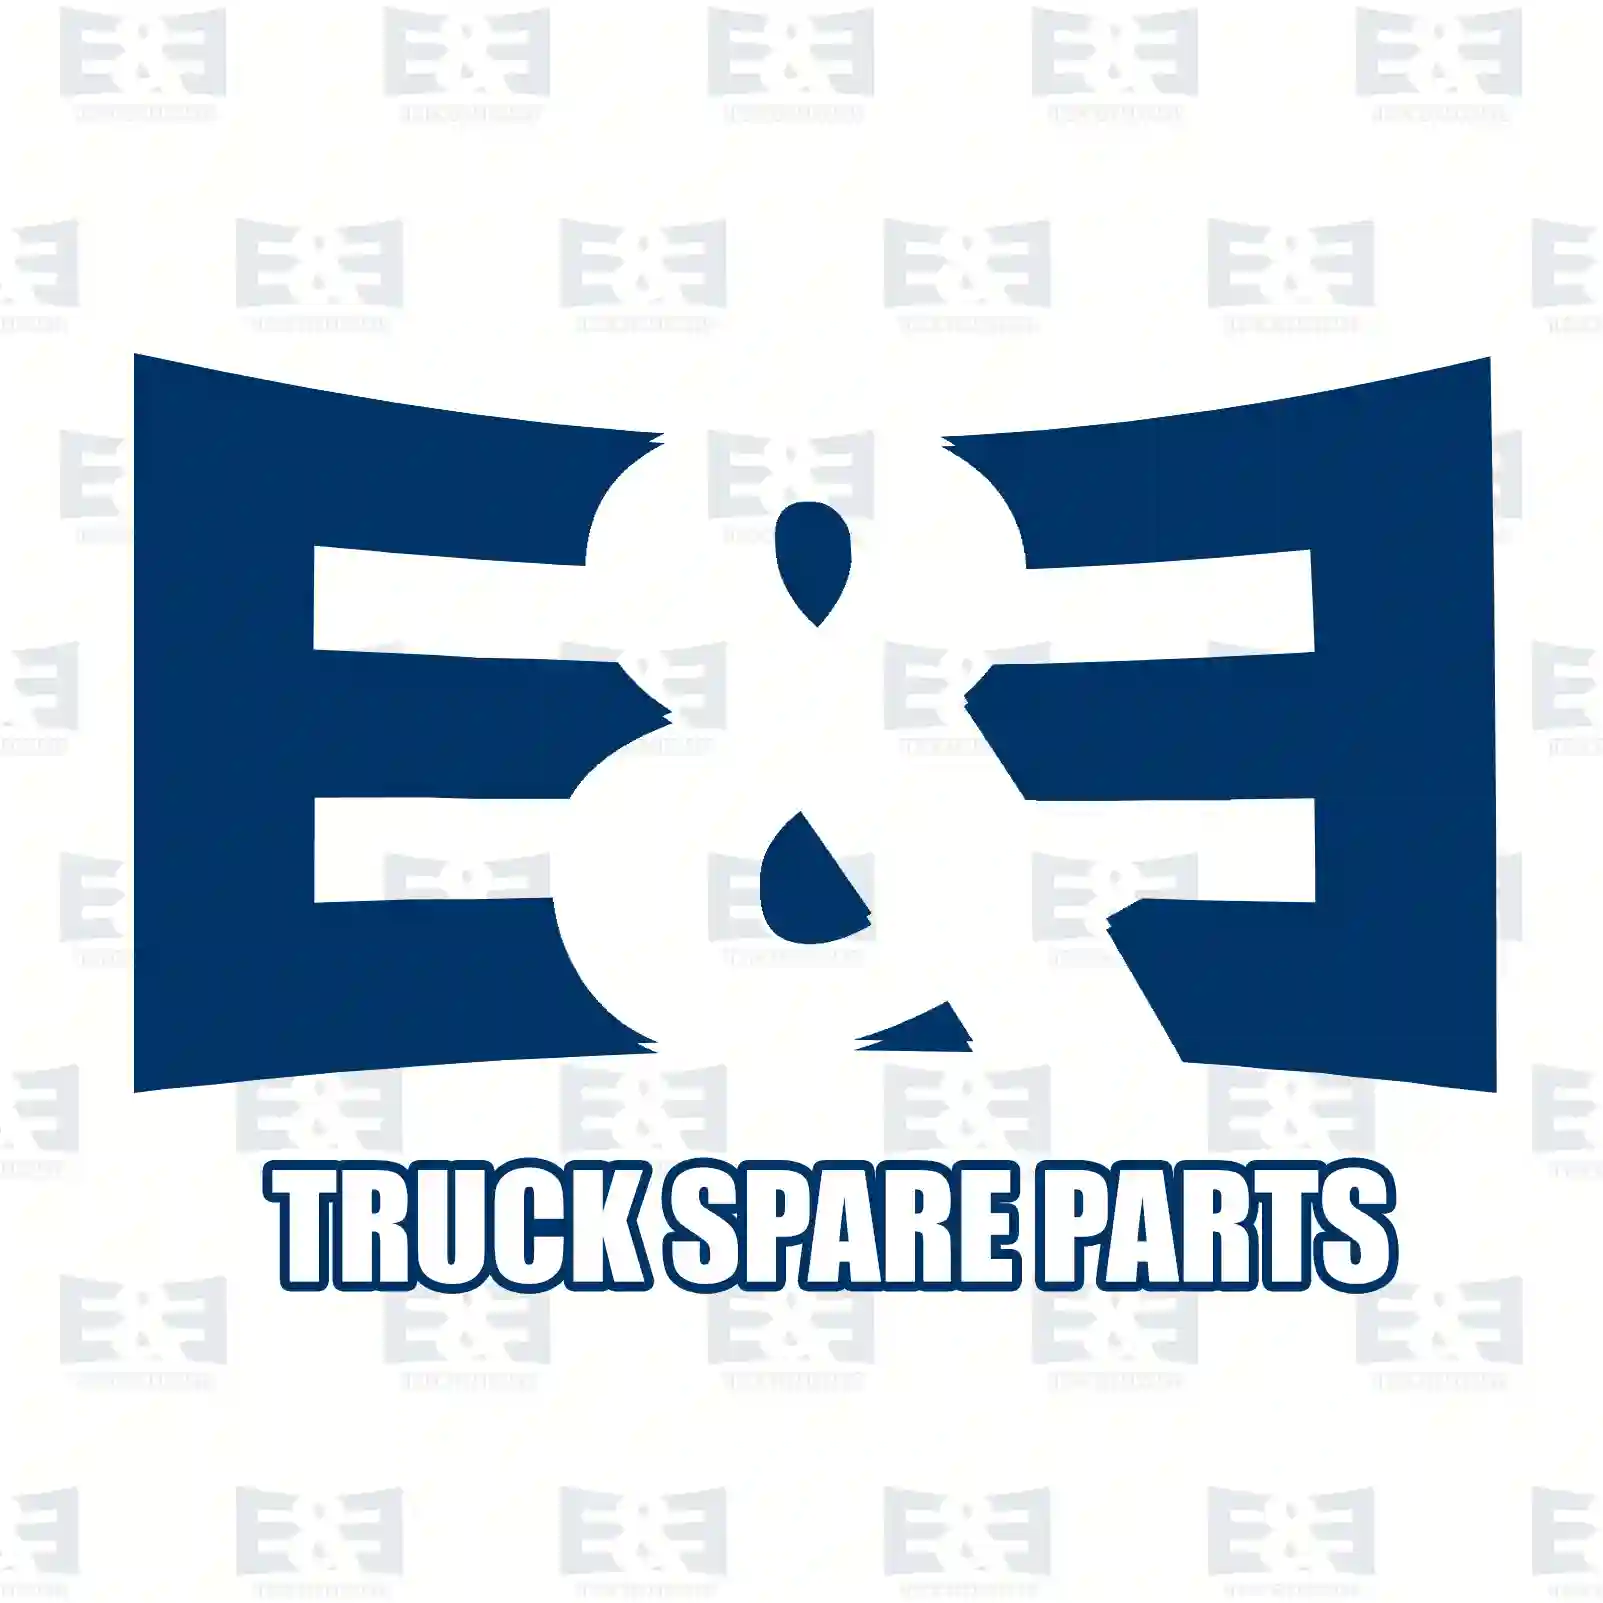 King pin kit, 2E2270793, 3263300219, 32658 ||  2E2270793 E&E Truck Spare Parts | Truck Spare Parts, Auotomotive Spare Parts King pin kit, 2E2270793, 3263300219, 32658 ||  2E2270793 E&E Truck Spare Parts | Truck Spare Parts, Auotomotive Spare Parts